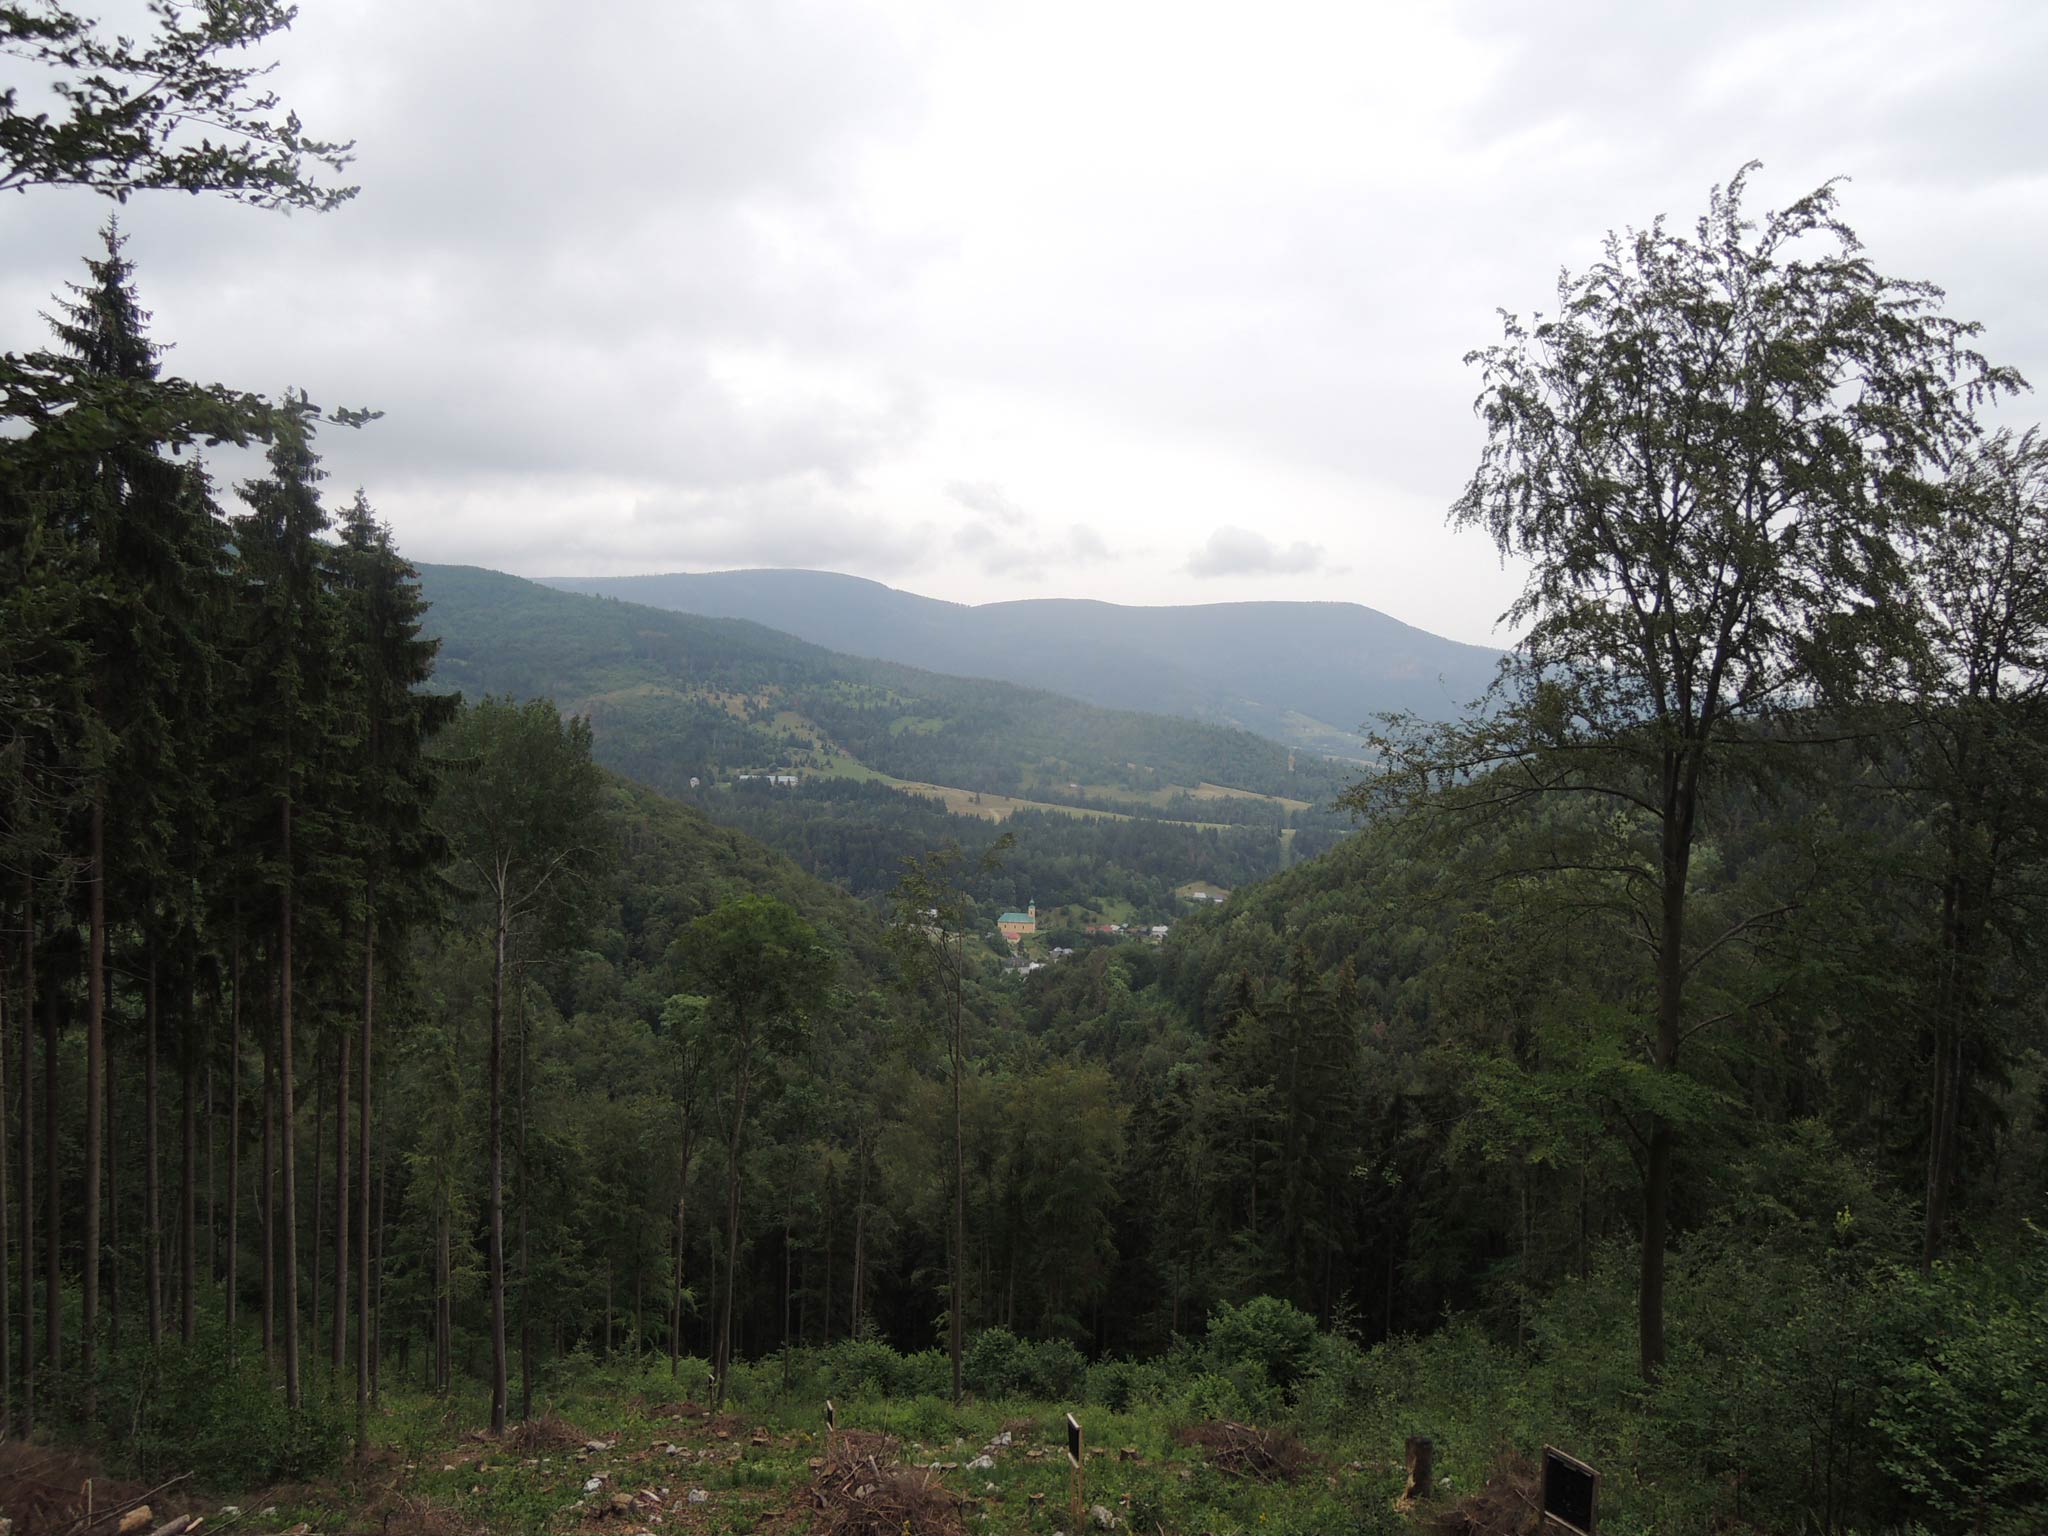 Z okraja Muránskej Planiny – Pod Skalou sa pozeráme na dedinu Muránska Huta. Nad ňou sa vypína Stolica, najvyšší vrchol Stolických vrchov (1476 m) aj celého Slovenského rudohoria